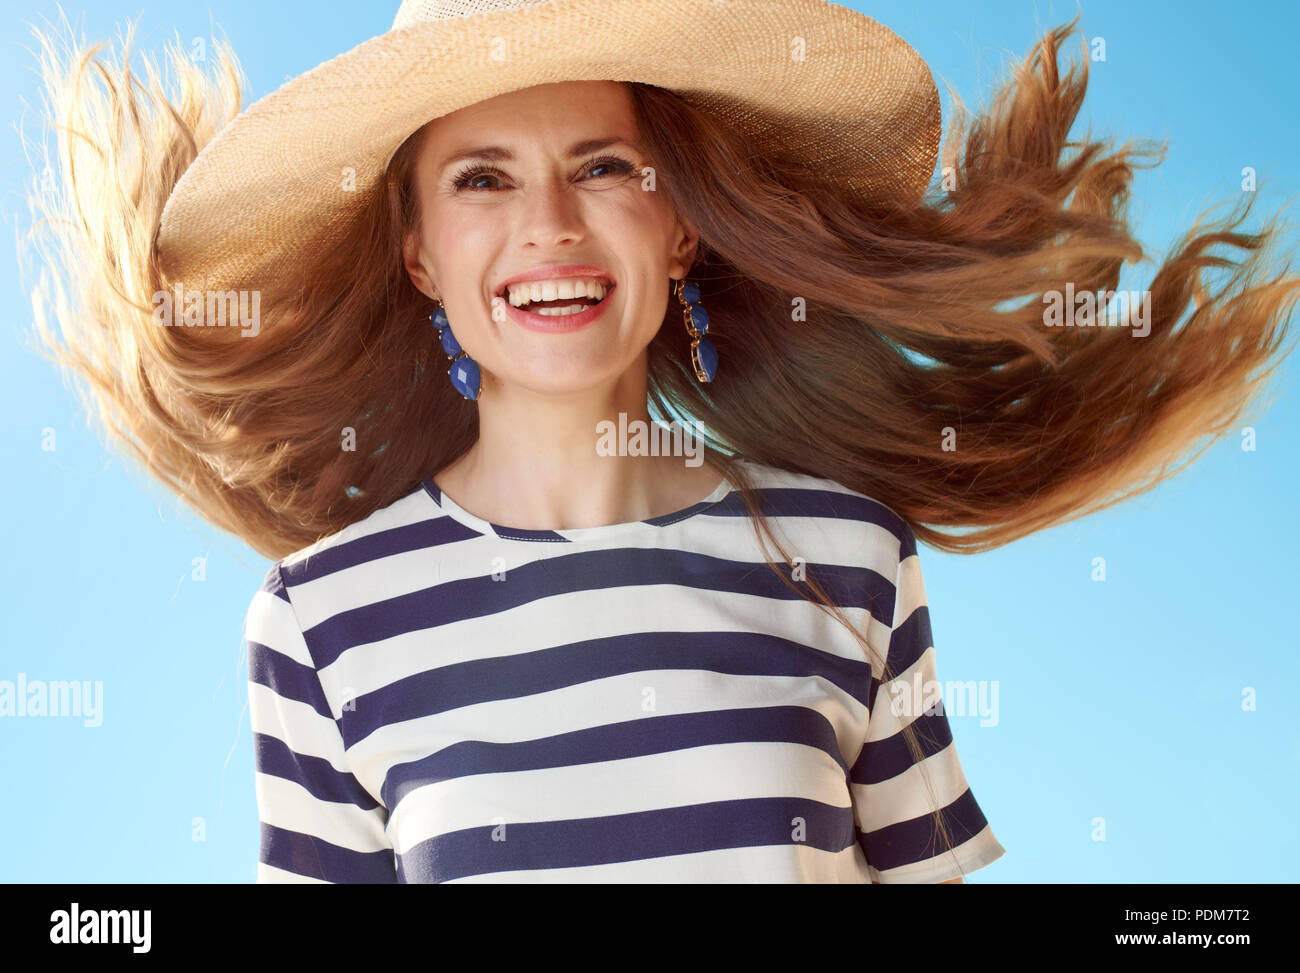 Glückliche junge Frau in Stroh Hut mit flatternden Haare gegen den blauen Himmel Stockfoto